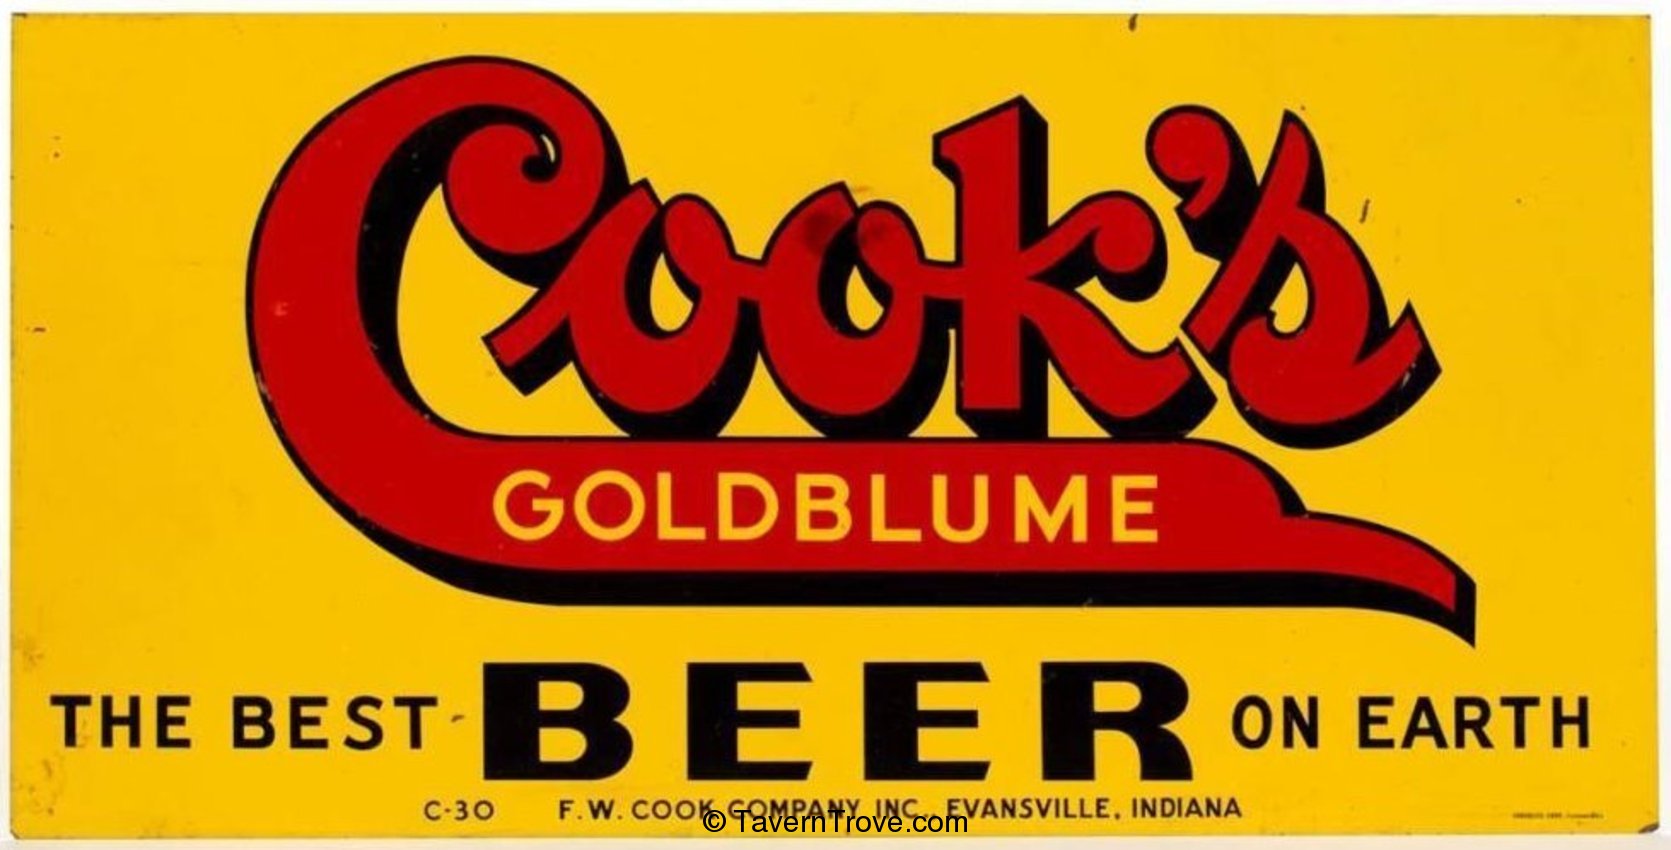 Cook's Goldblume Beer tin